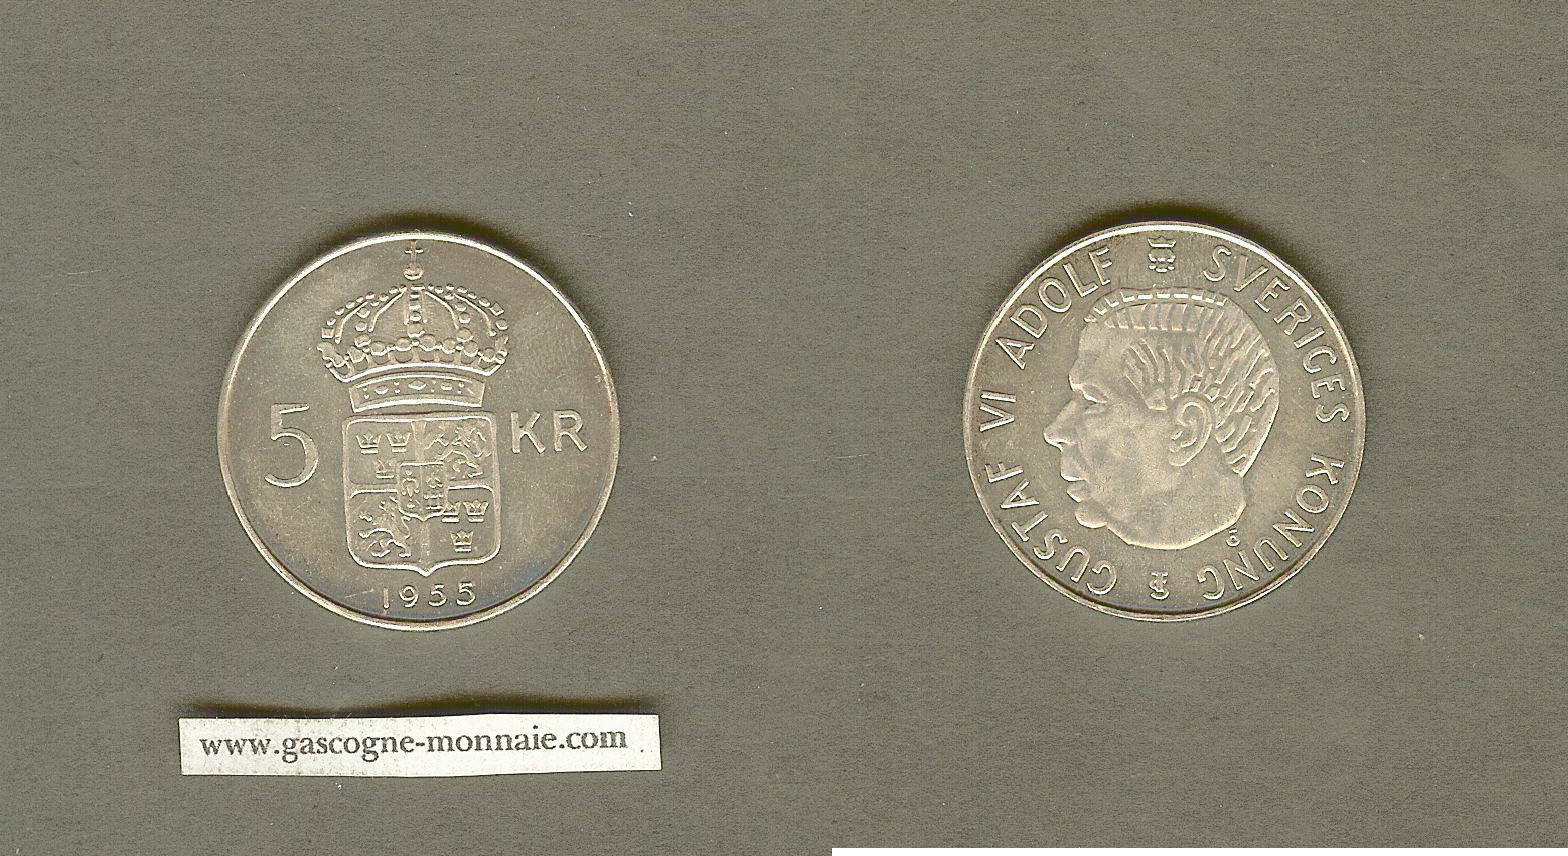 Sweden 5 kronor 1955 BU